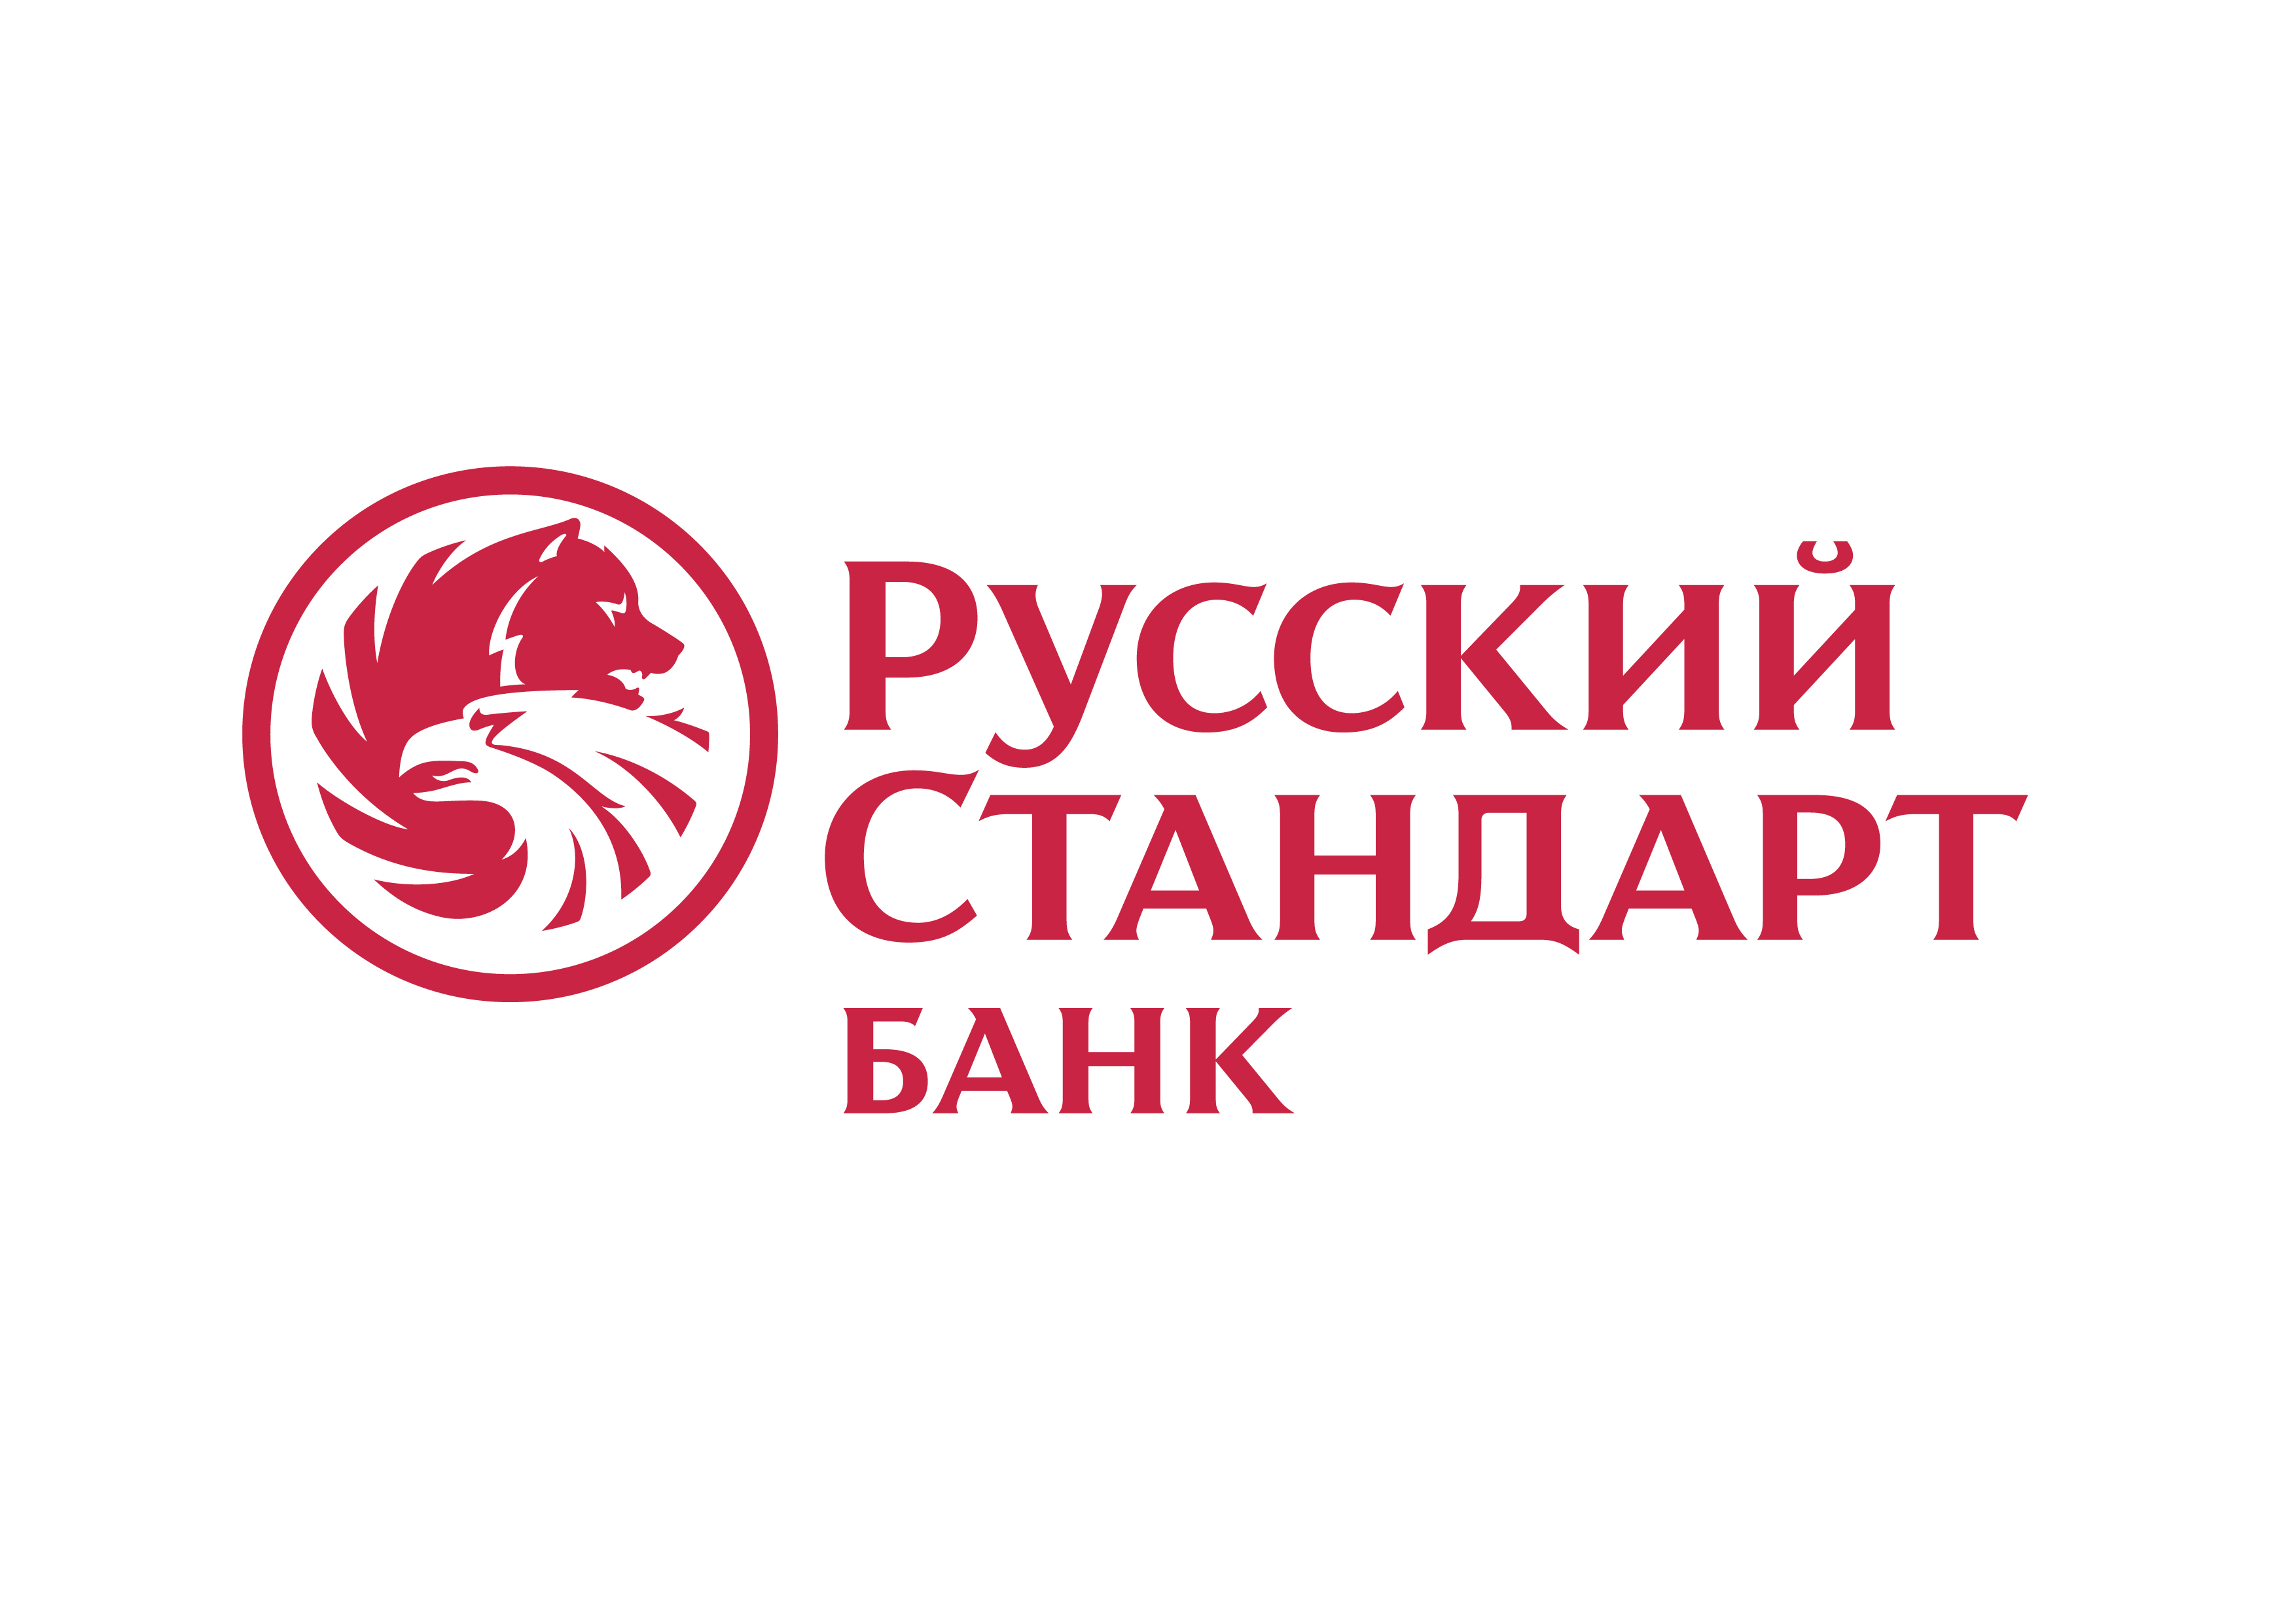 Банк Русский стандарт